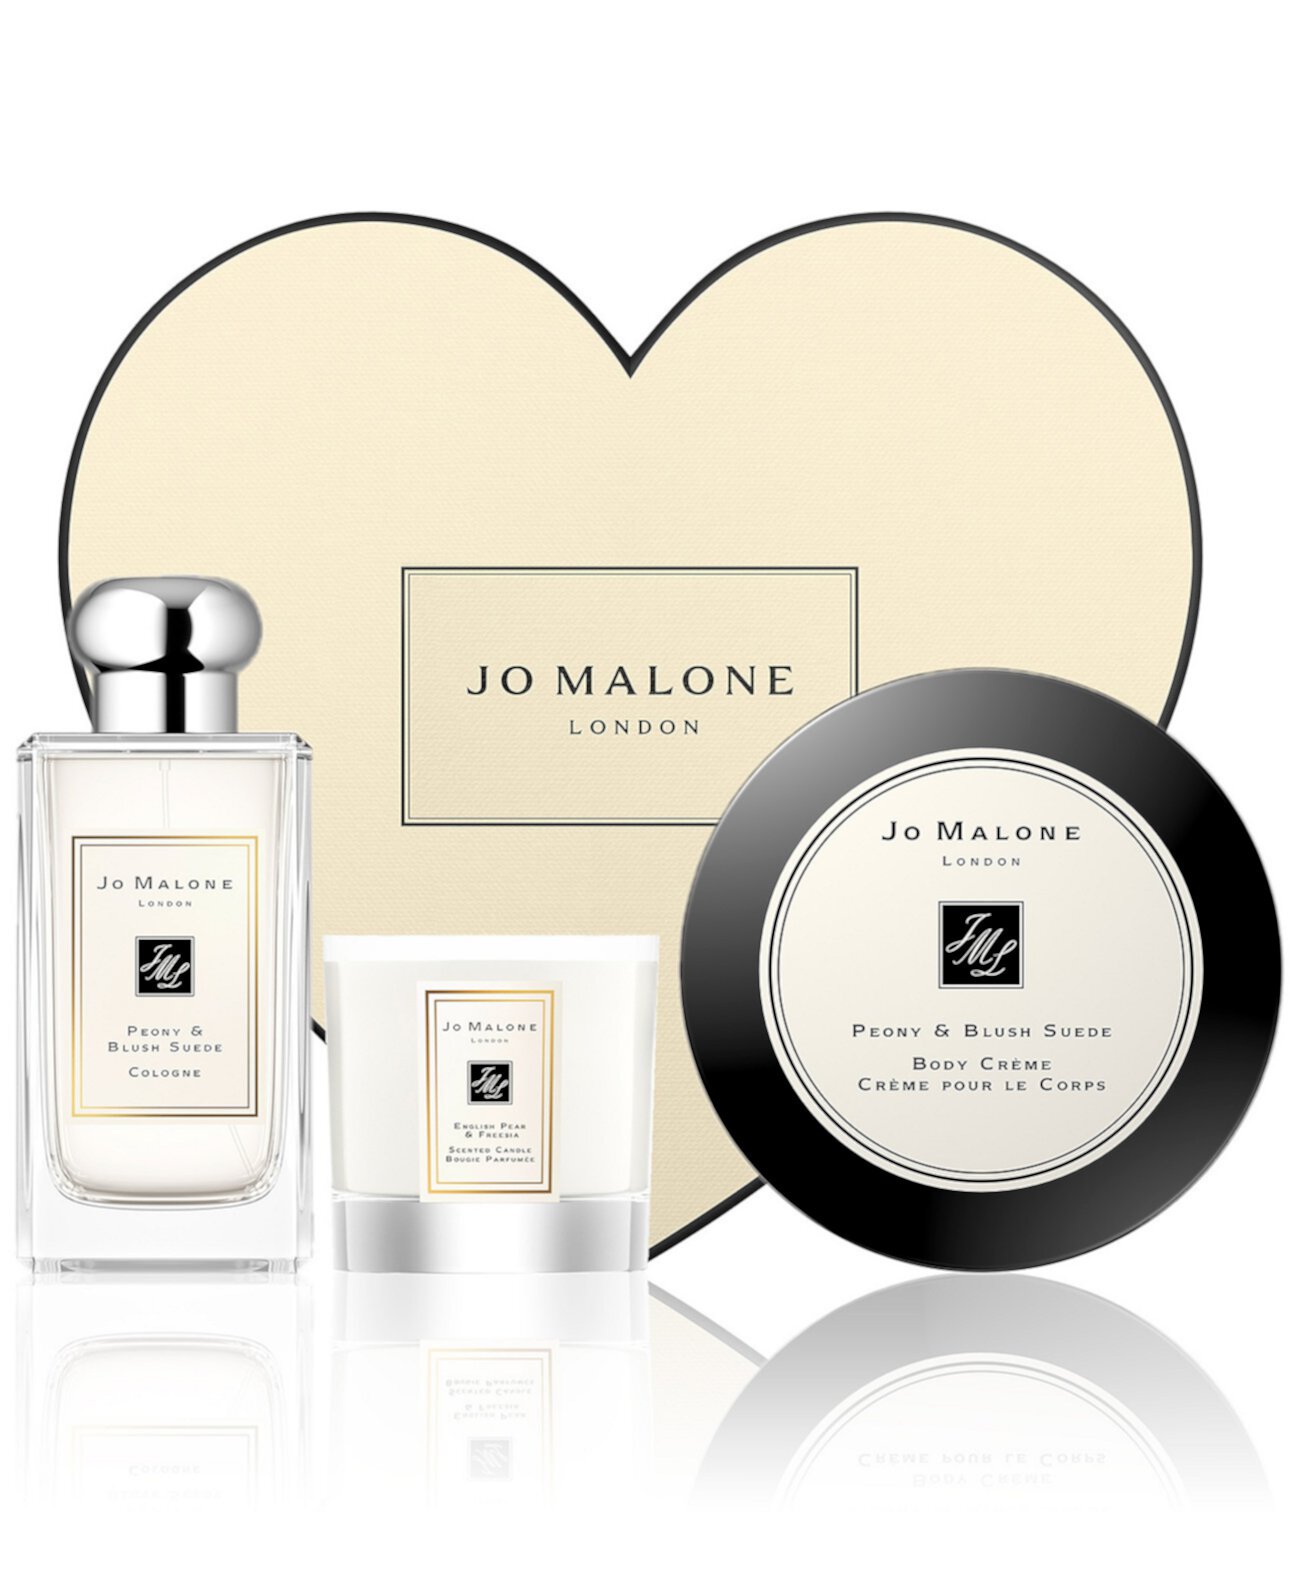 Коллекция парных ароматов Peony & Blush Suede, созданная для Macy's Jo Malone London